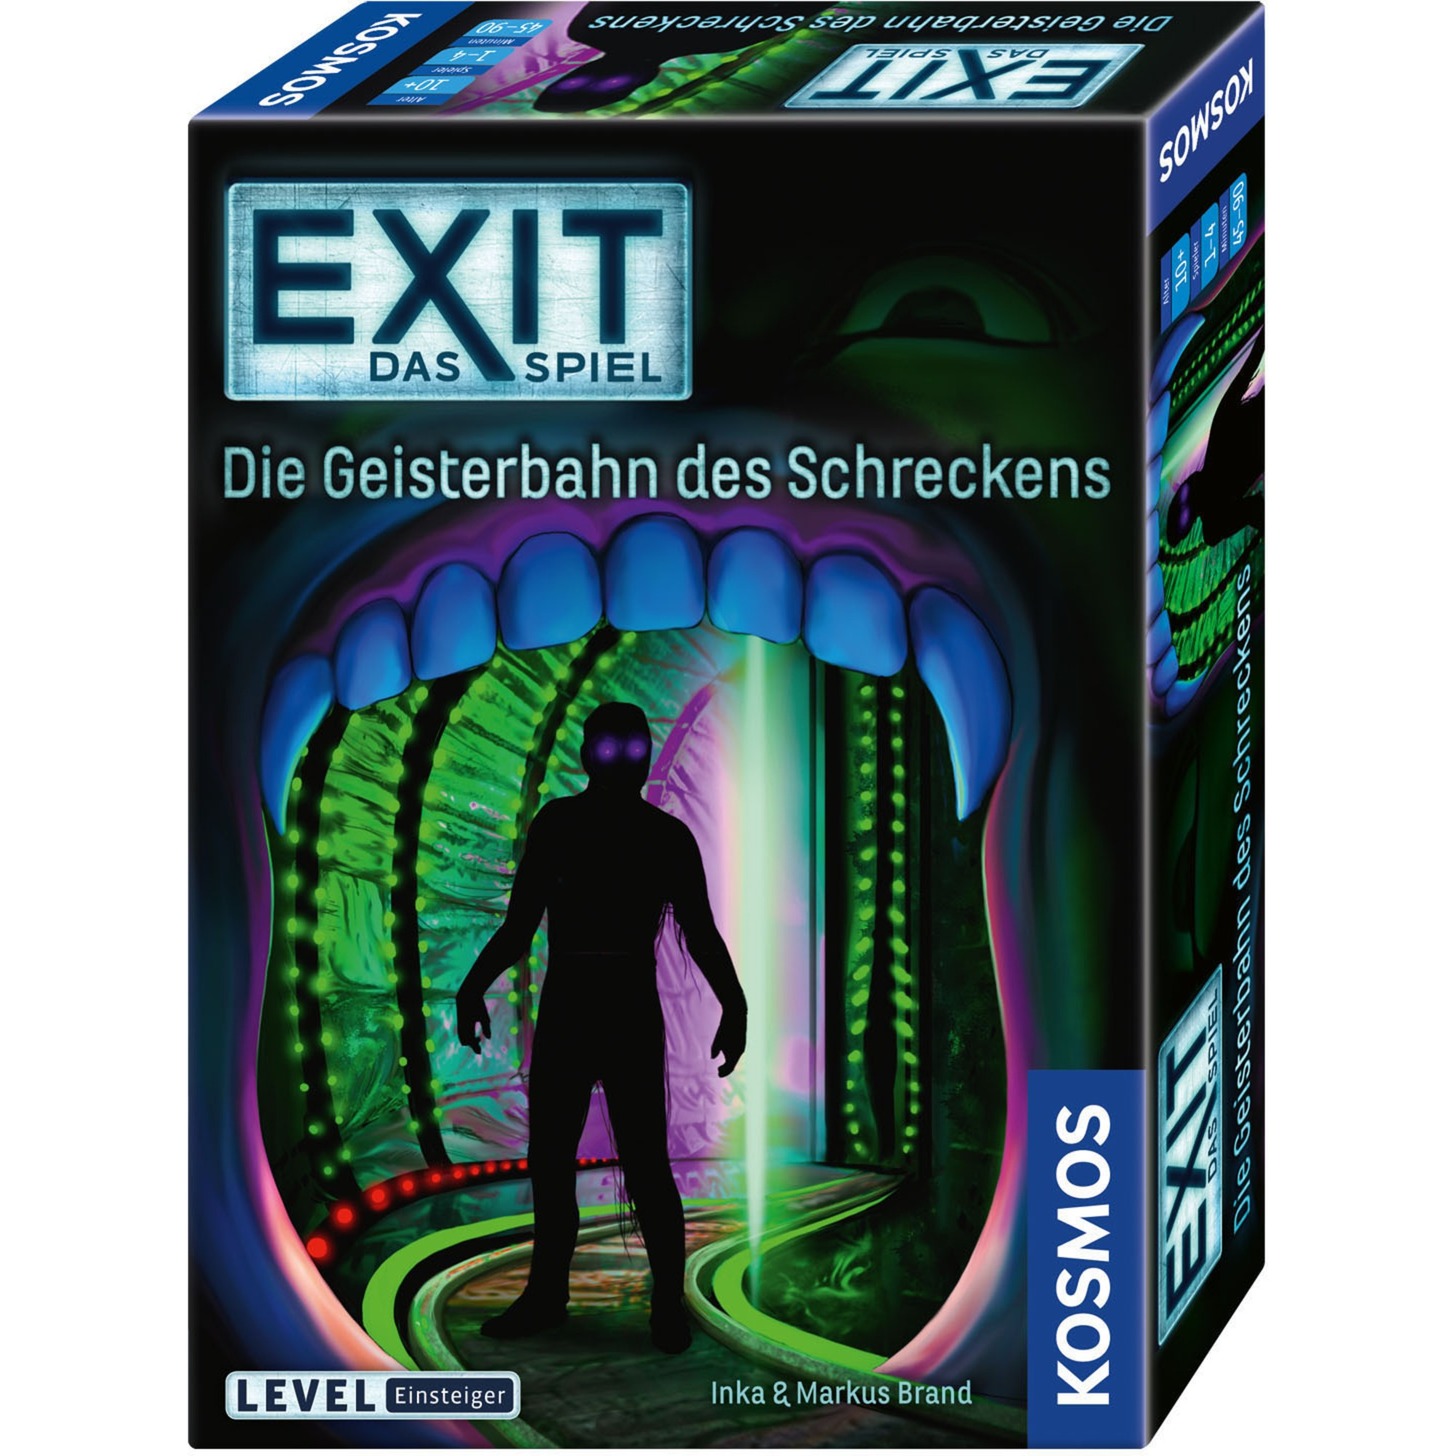 Image of Alternate - EXIT - Die Geisterbahn des Schreckens, Partyspiel online einkaufen bei Alternate